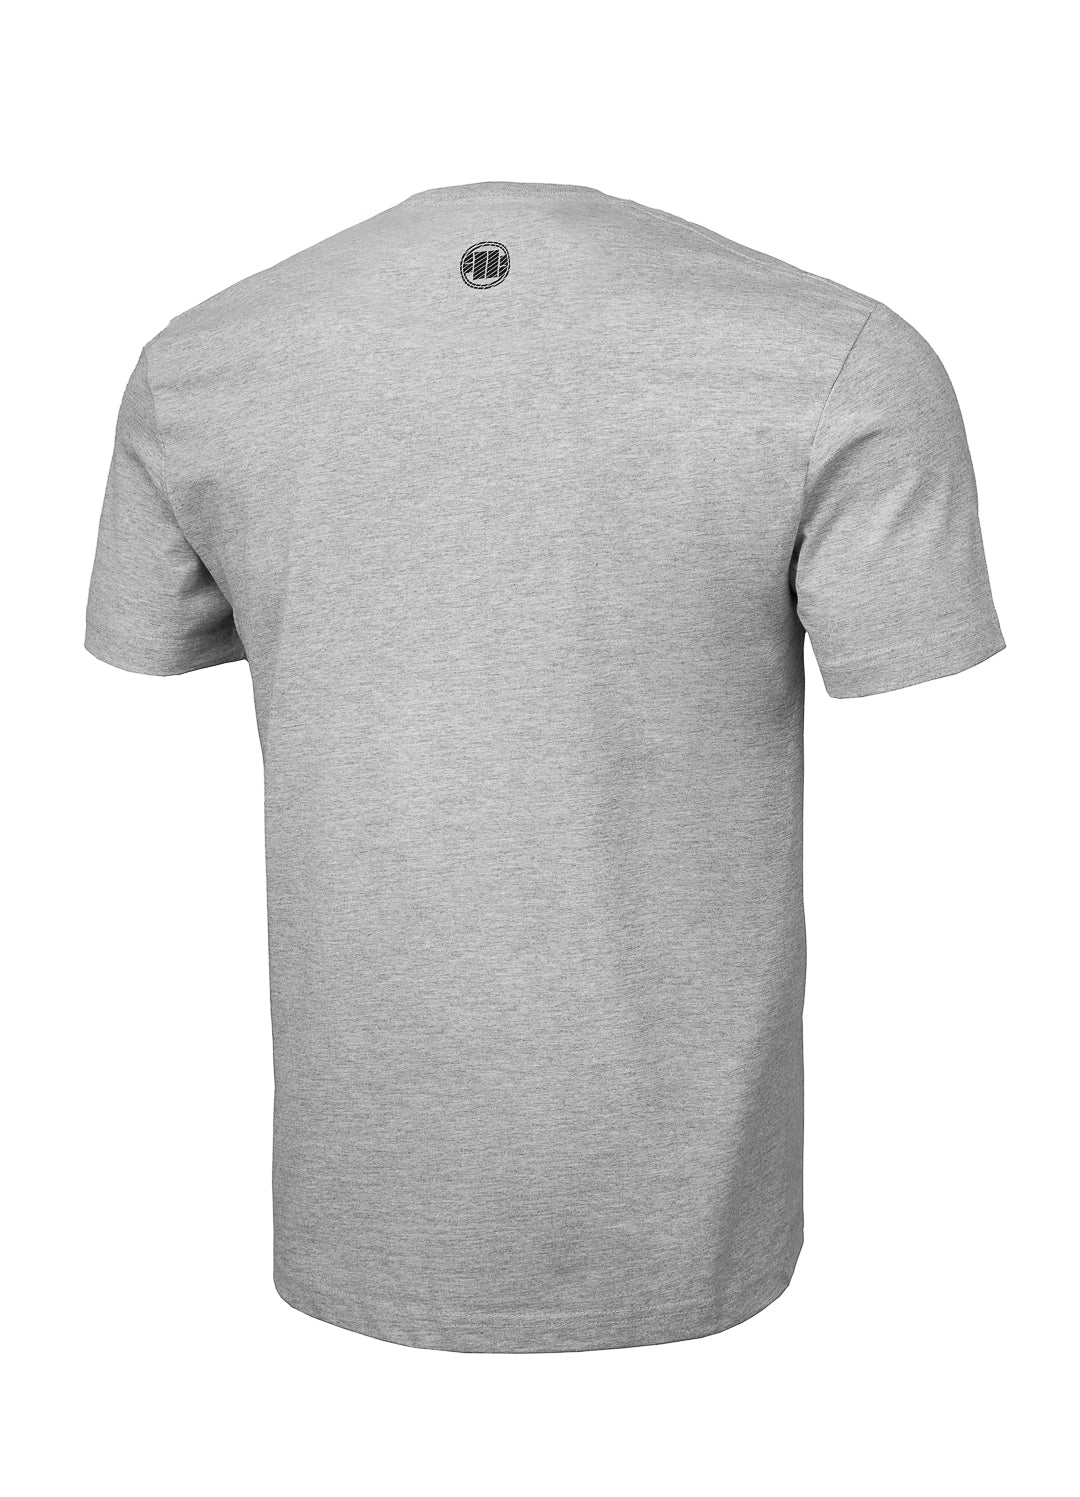 HILLTOP Lightweight Grey T-shirt